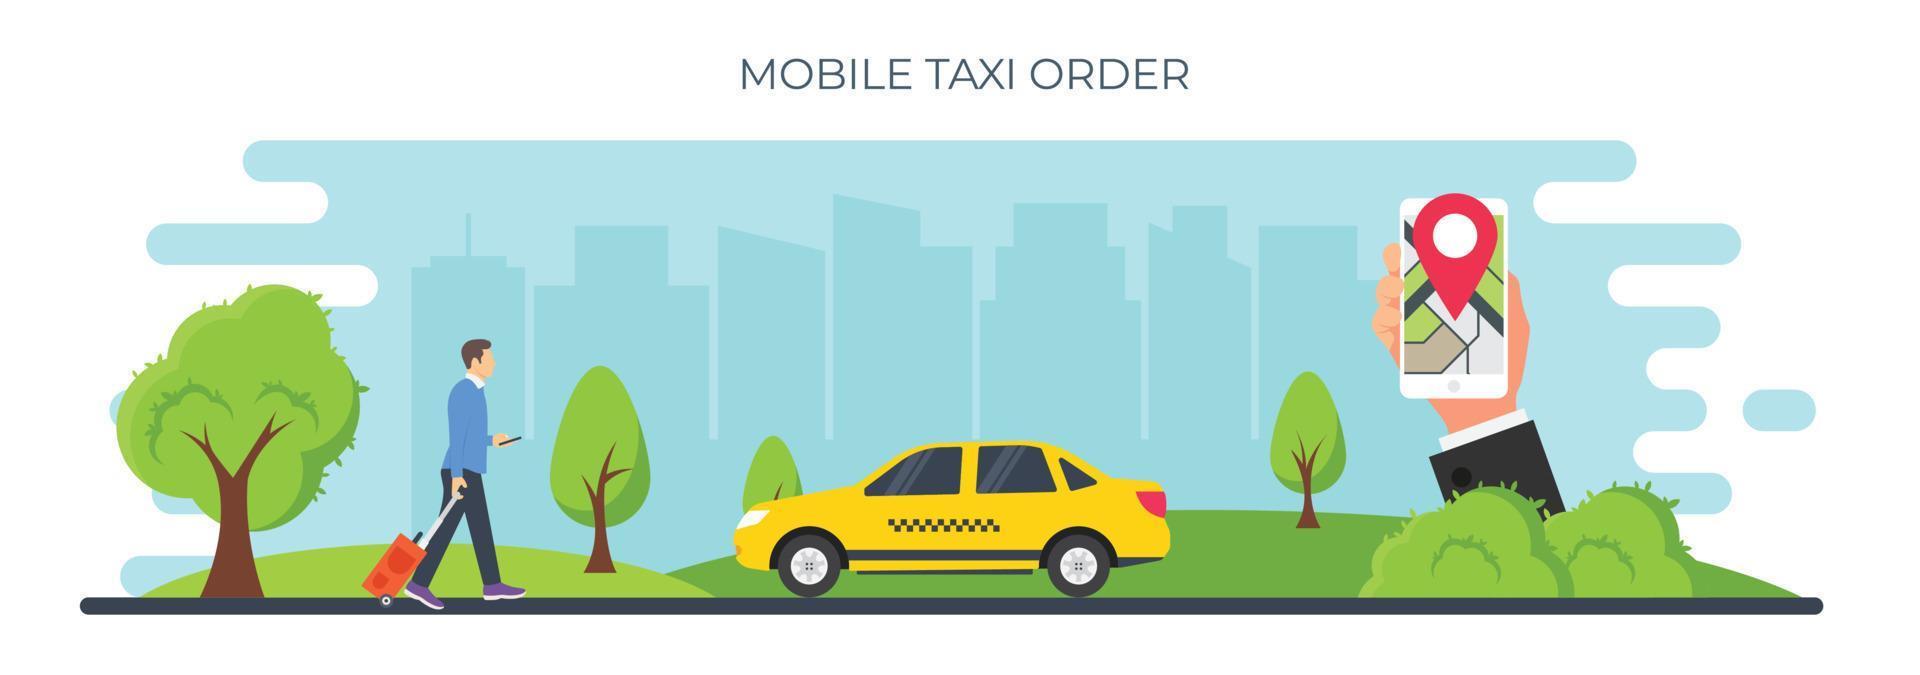 mobiel taxi bestellen vector